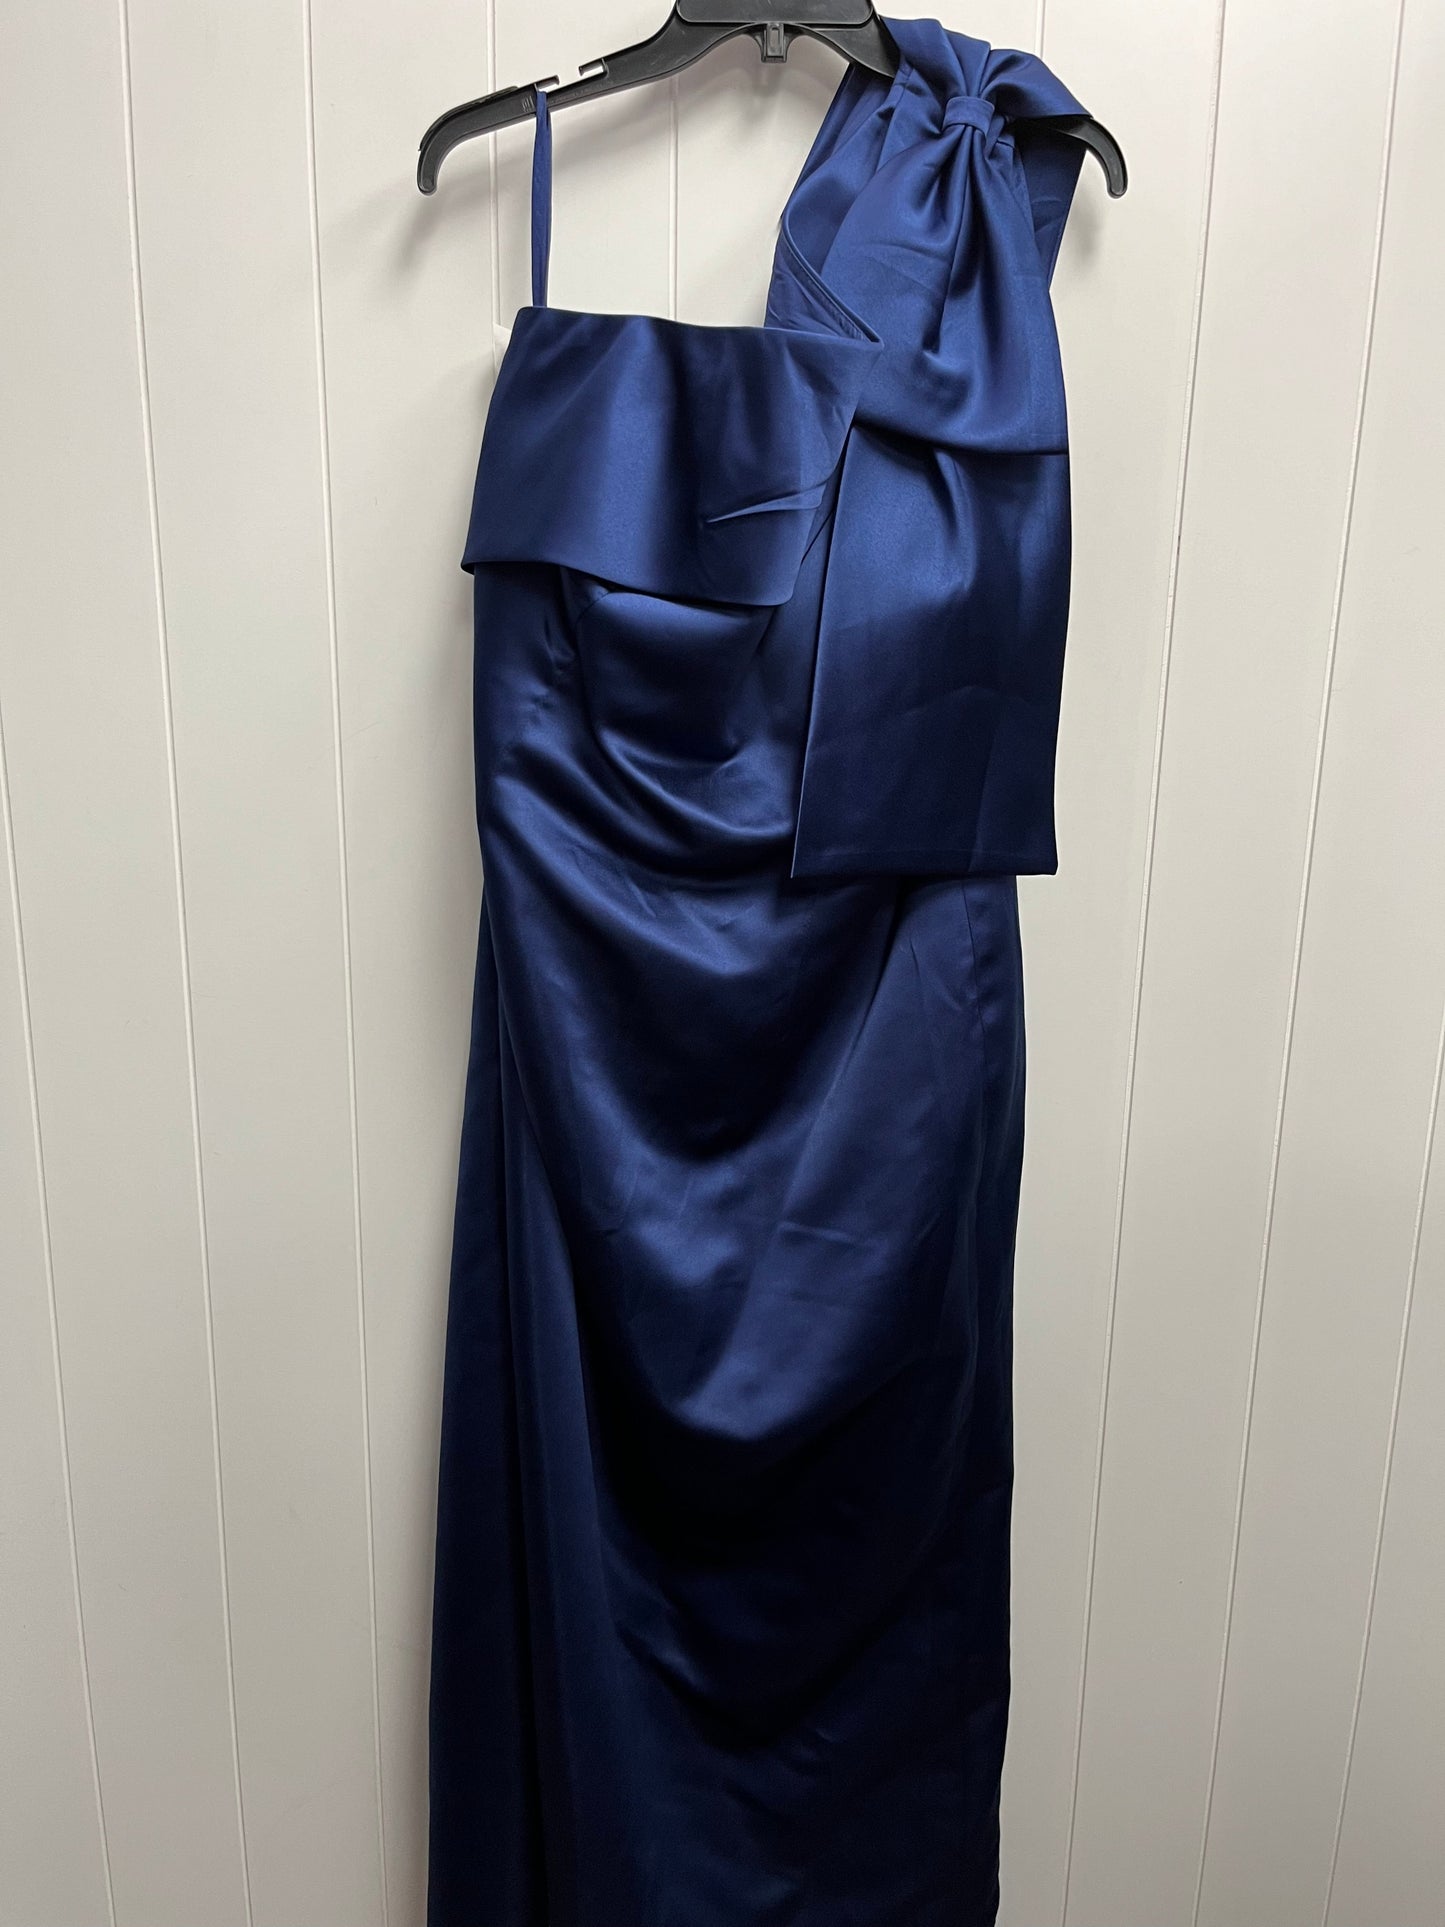 Blue Dress Casual Maxi , missac Size 2x